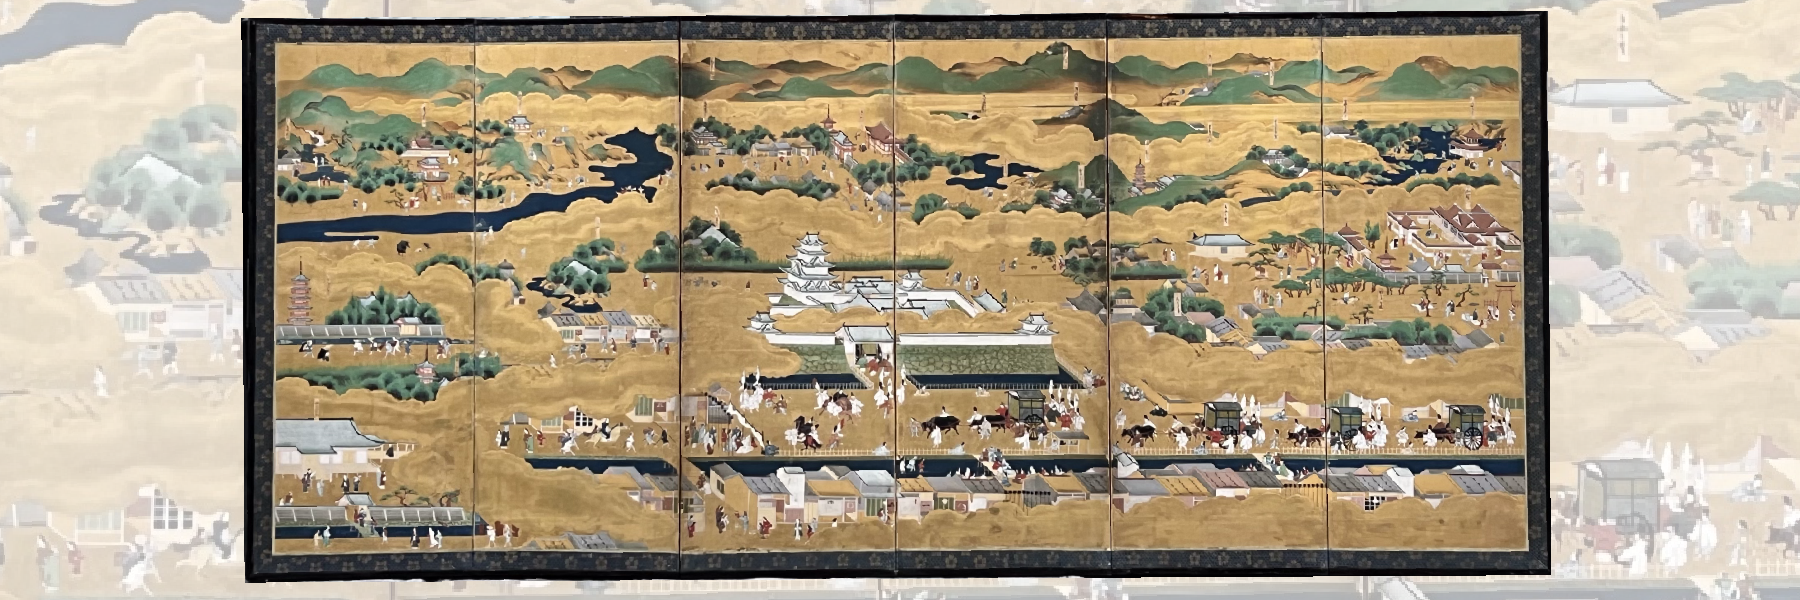 Paravent Rakuchu-Rakugai, Japon époque Edo 18e siècle